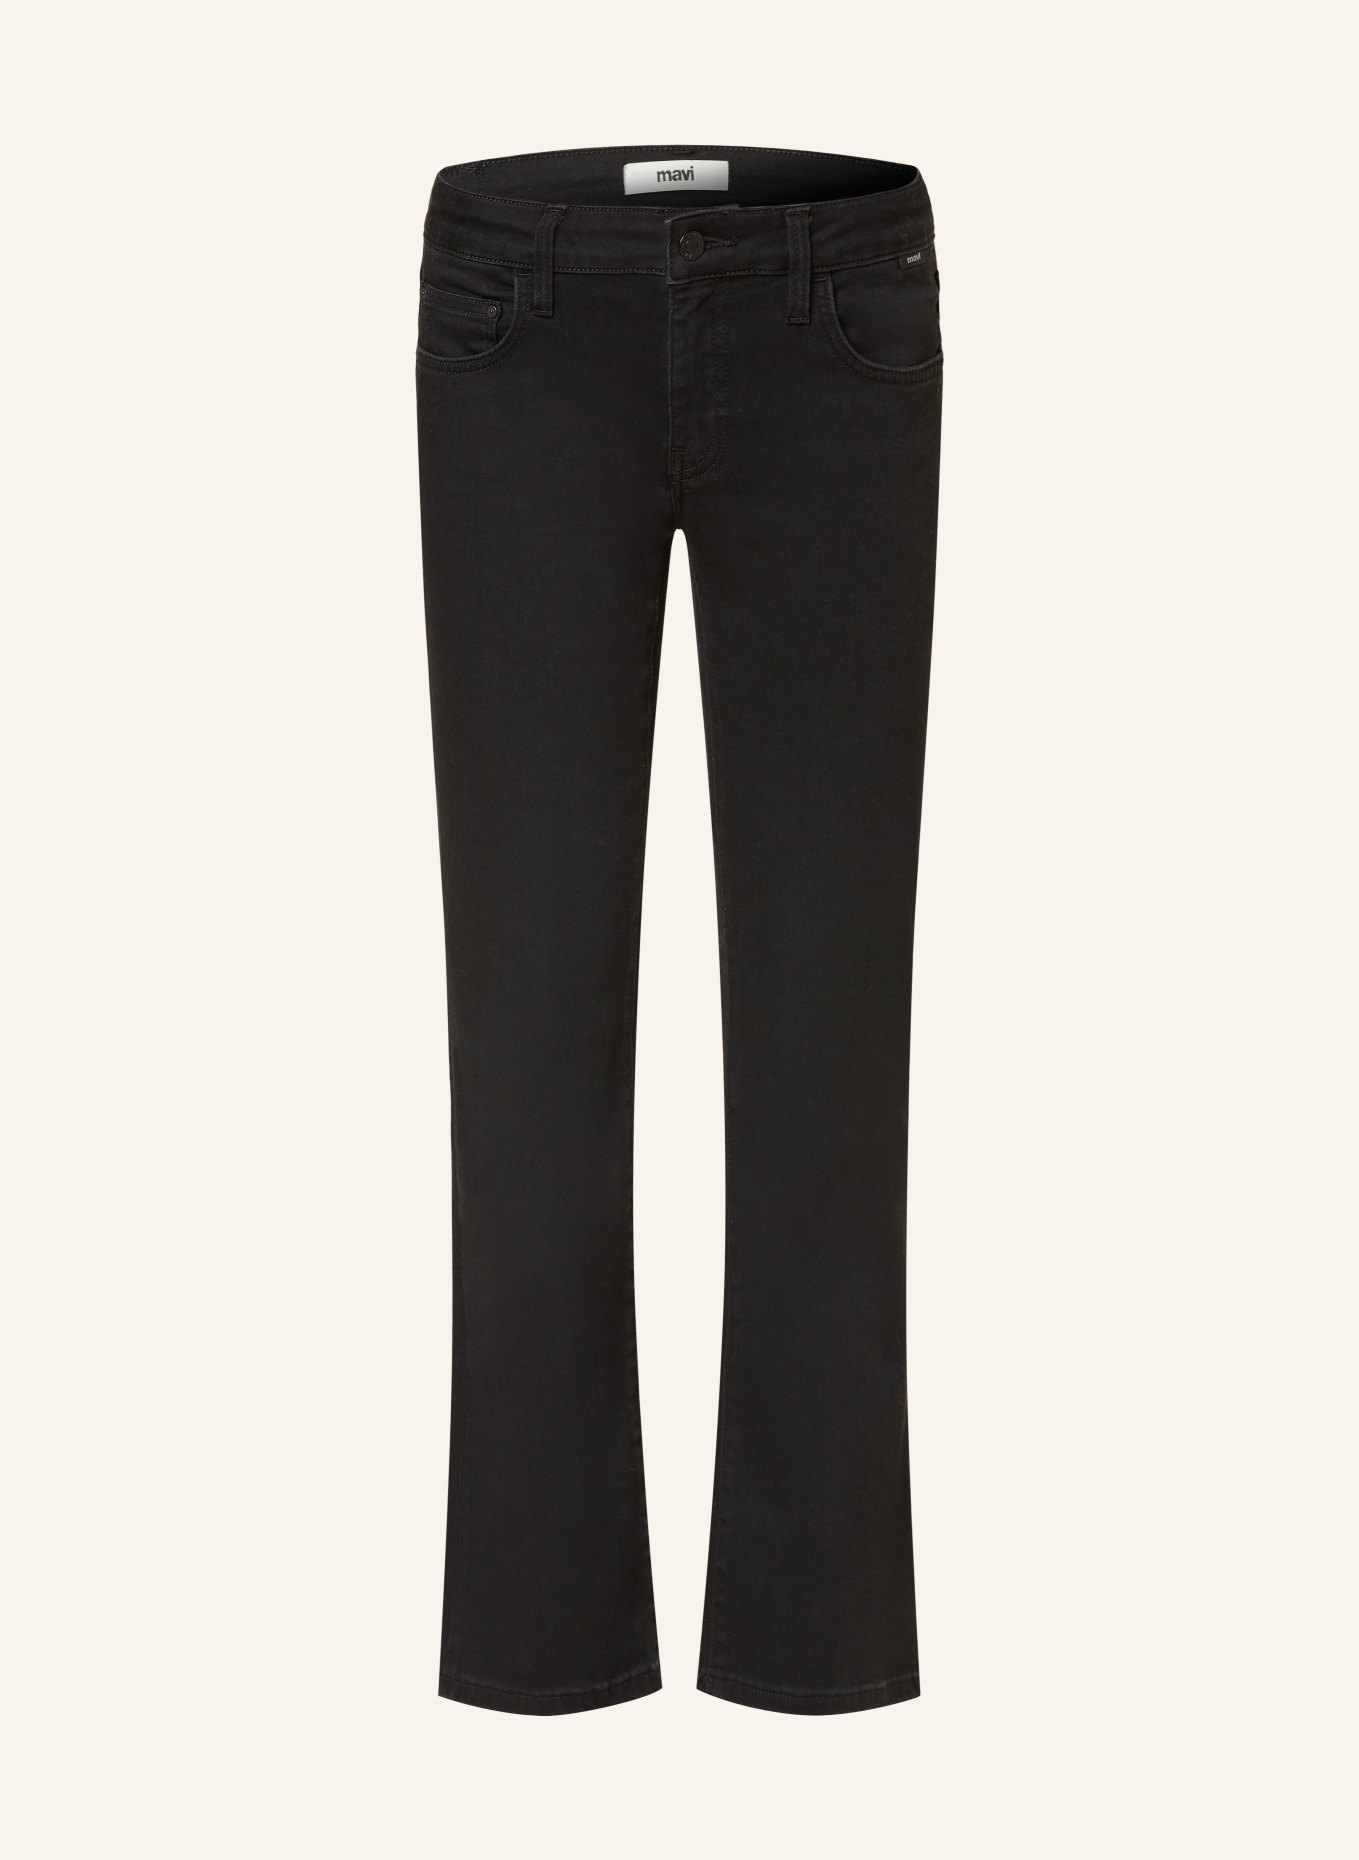 mavi Bootcut jeans BELLA, Color: 86779 smoke super shape (Image 1)